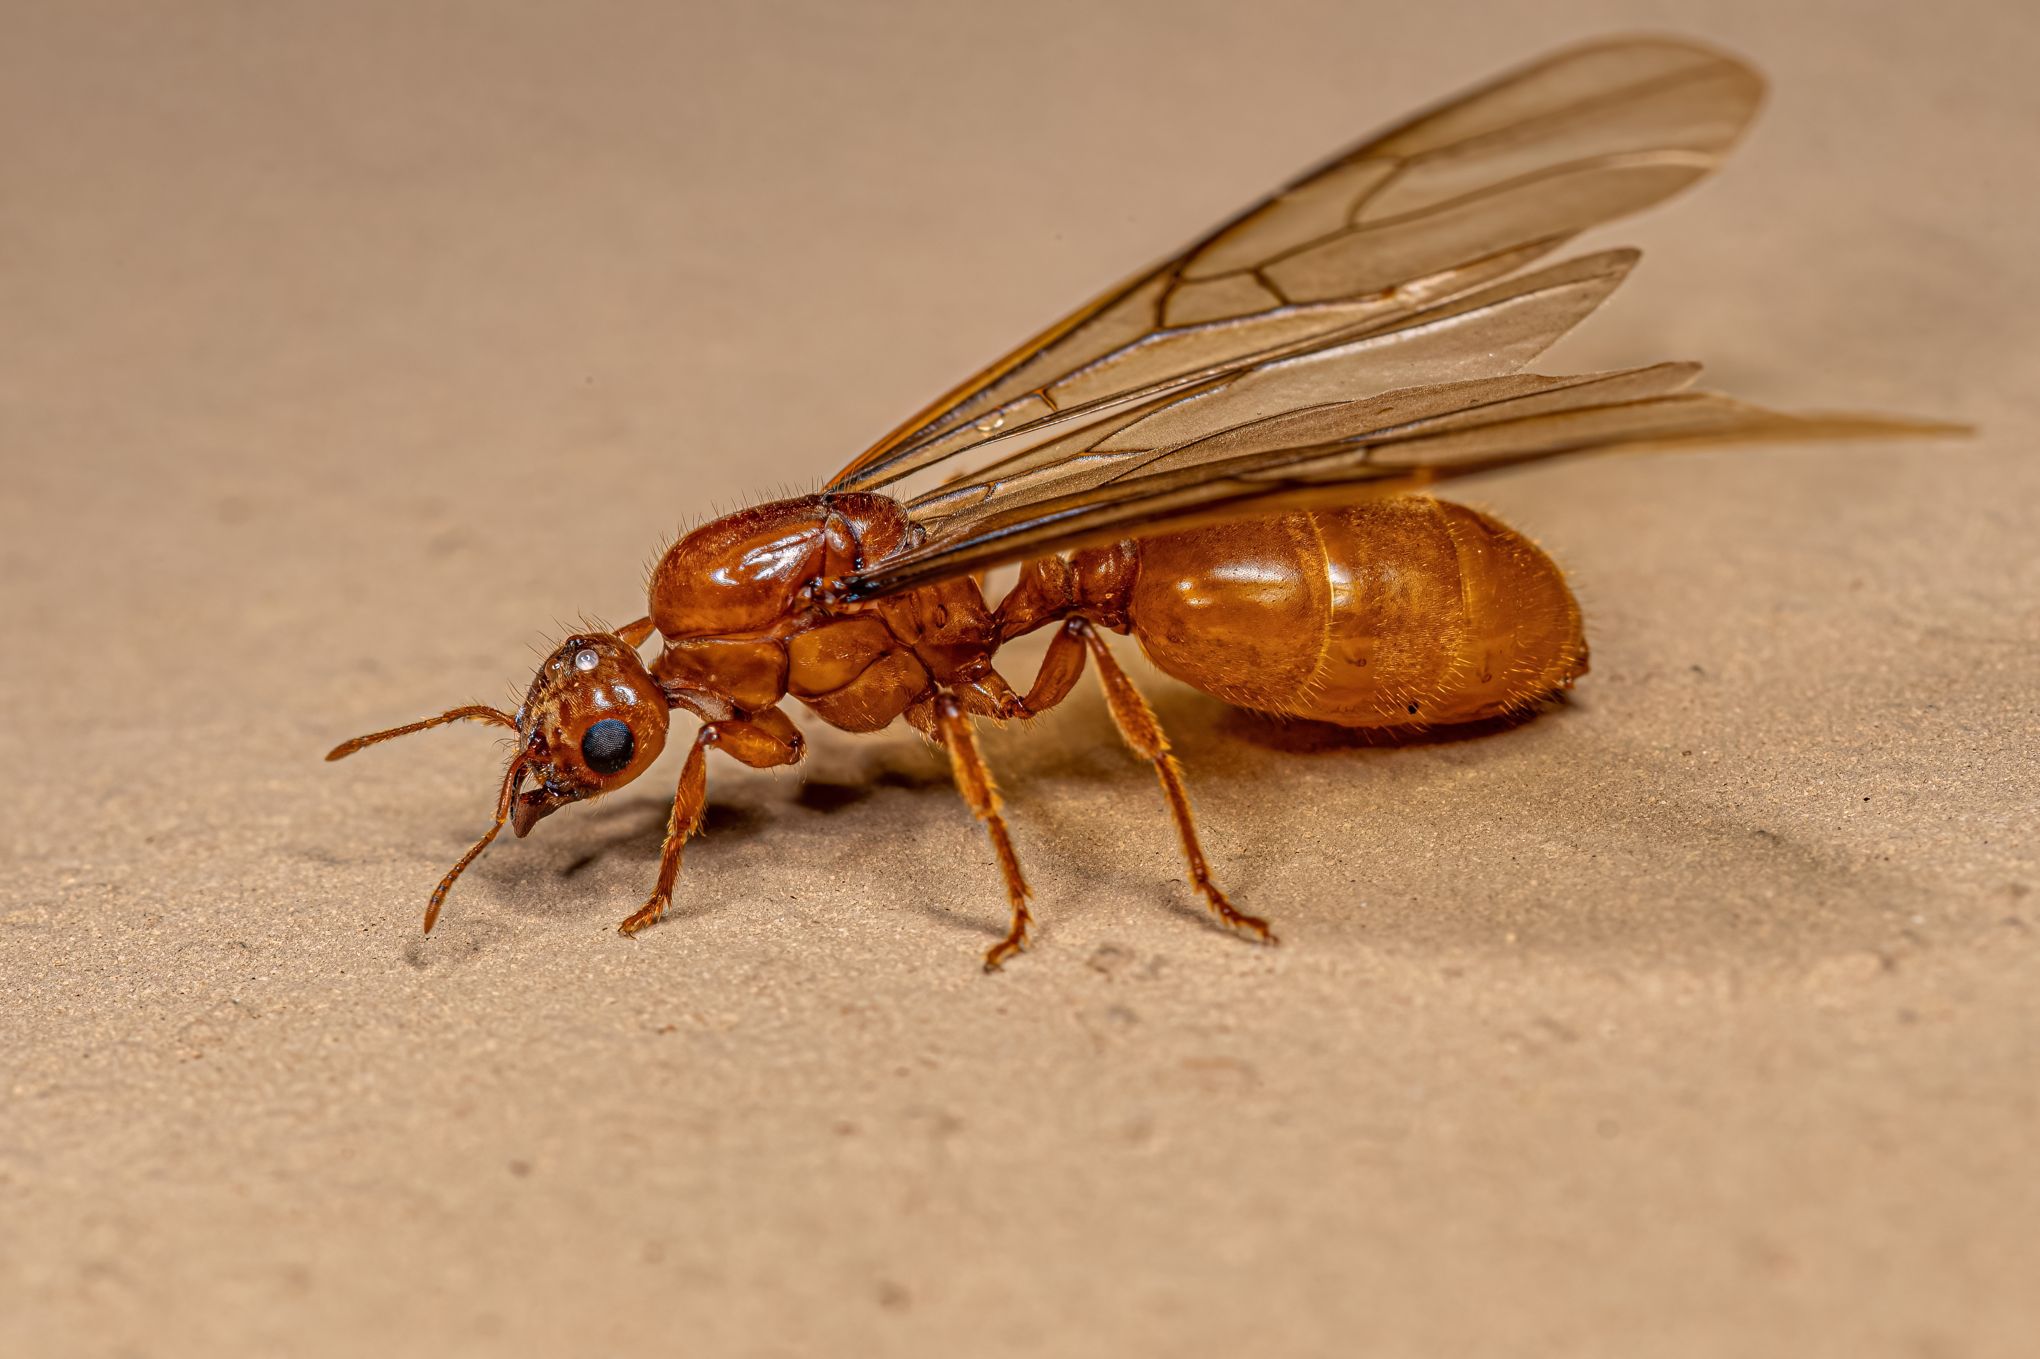 Les fourmis ont perdu leurs ailes pour gagner du muscle